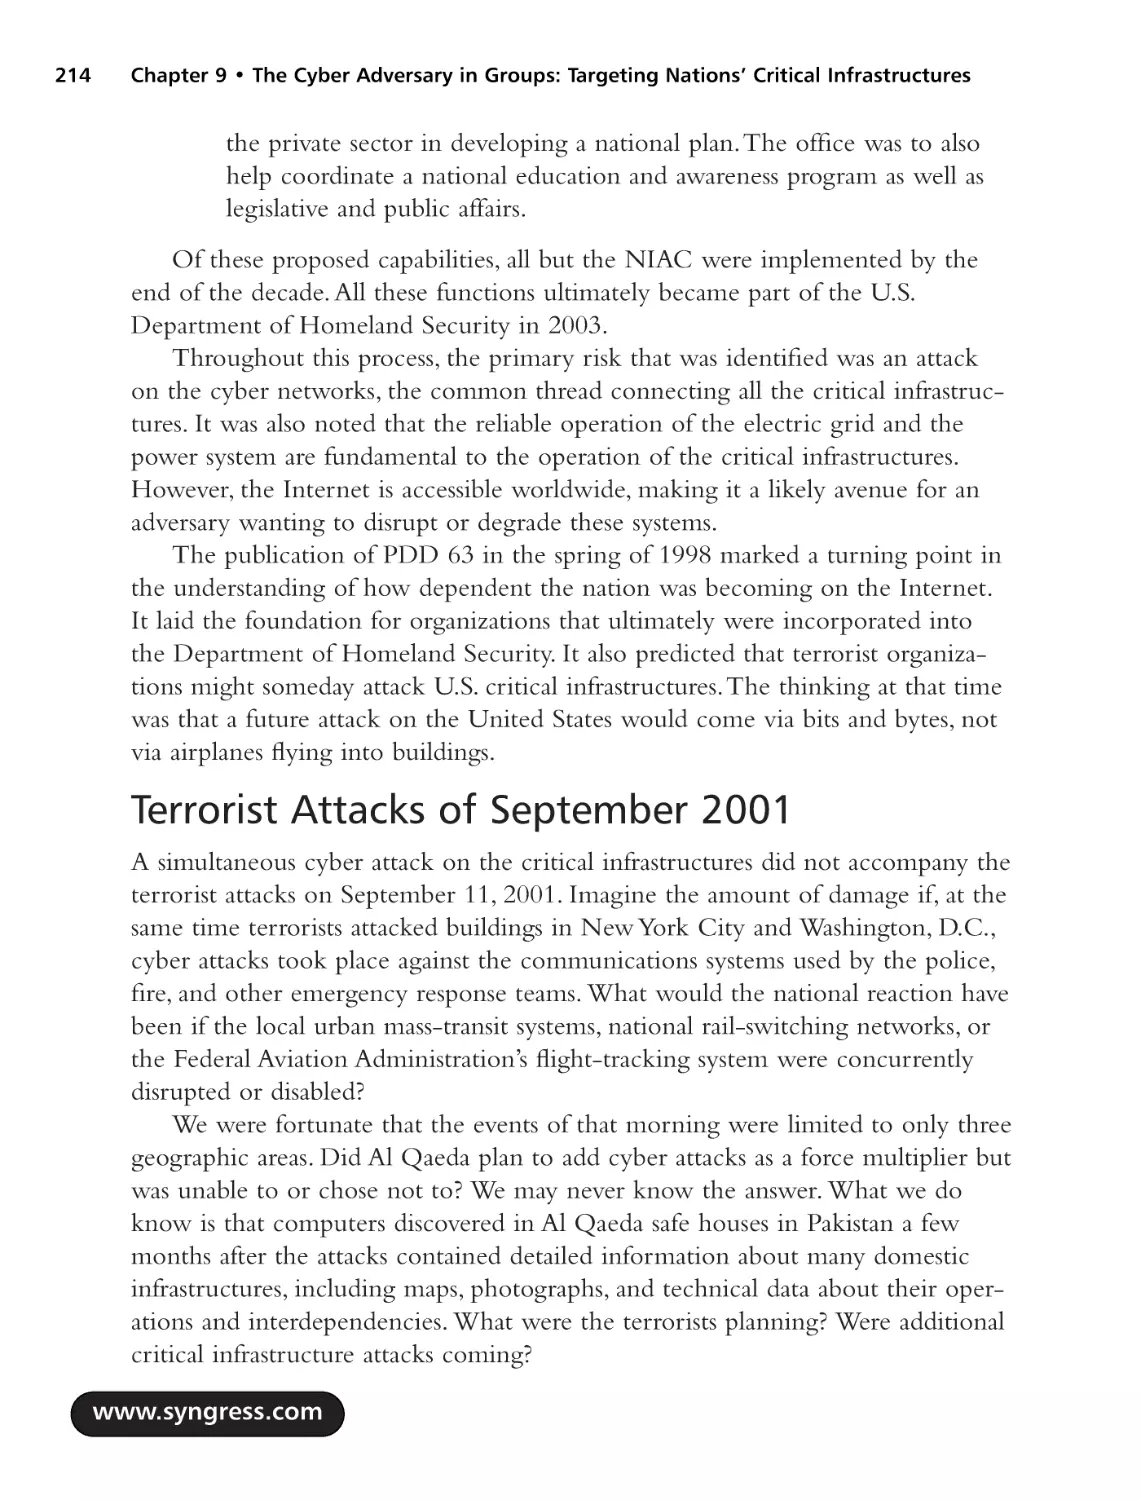 Terrorist Attacks of September 2001